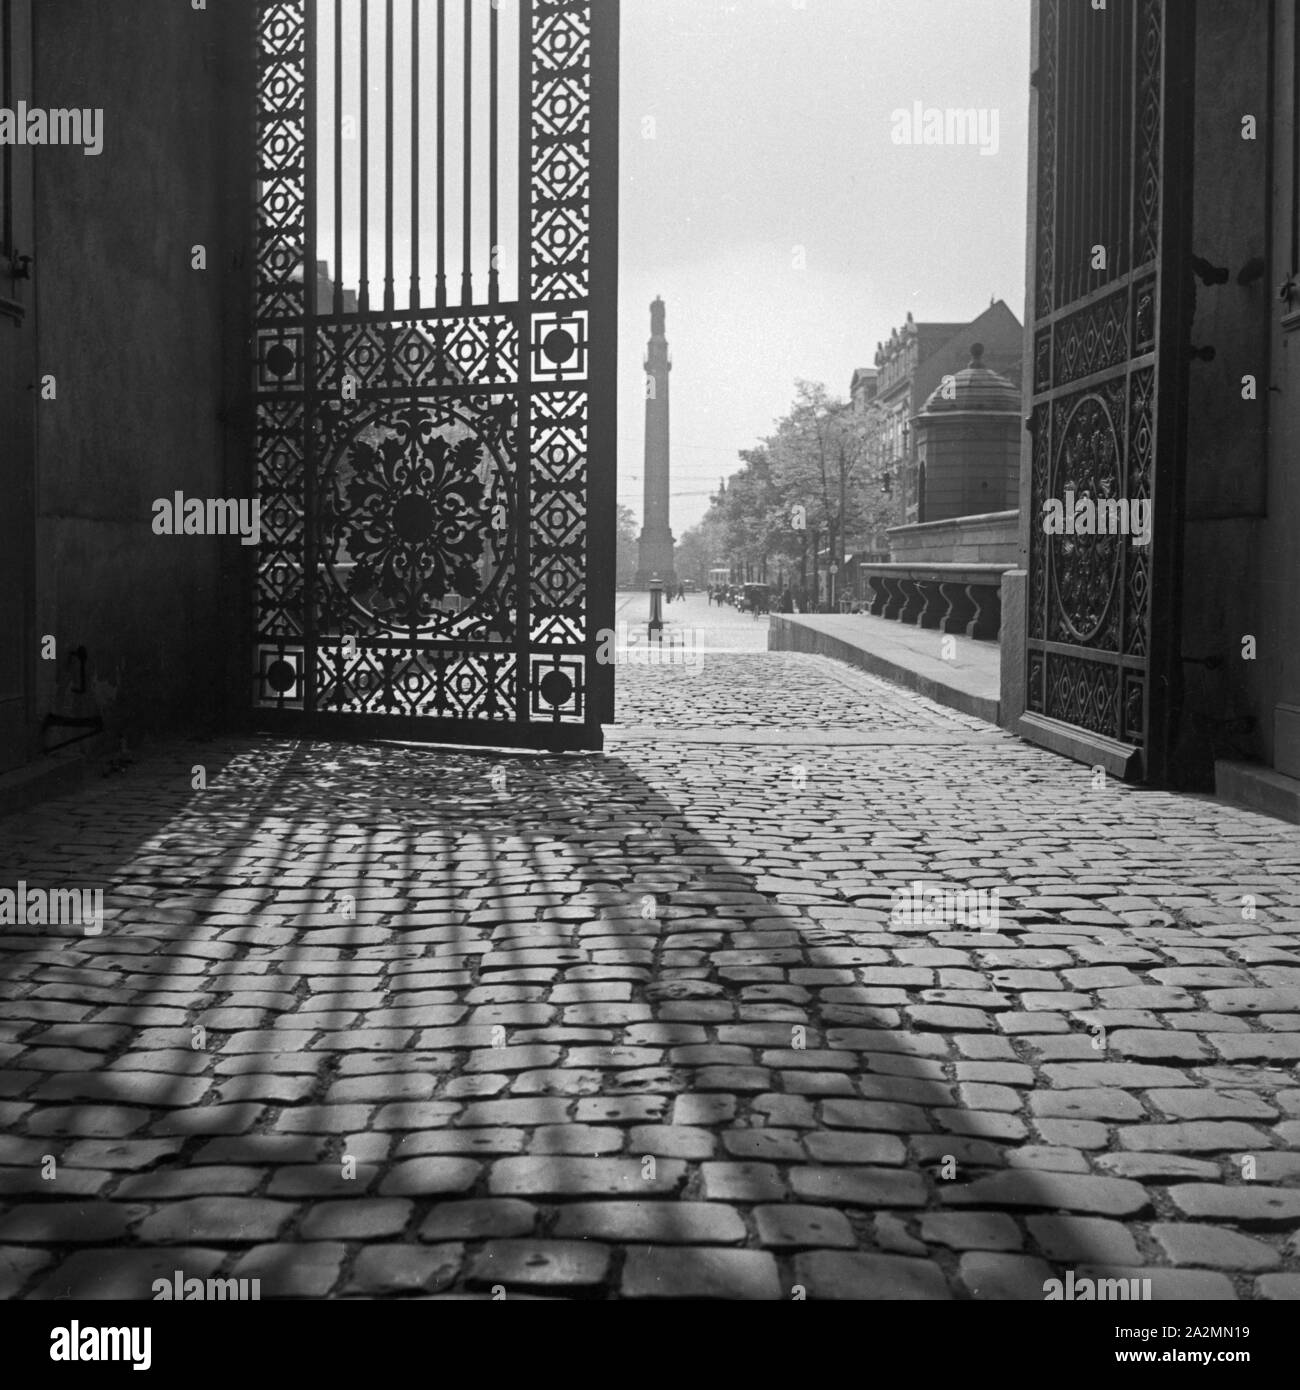 Am Portal zum Schloss in Darmstadt, gegenüber von Hotel Deuster 'Schilller Eck', Deutschland 1930er Jahre. At the entrance gate of Darmstadt castle, Germany 1930s. Stock Photo